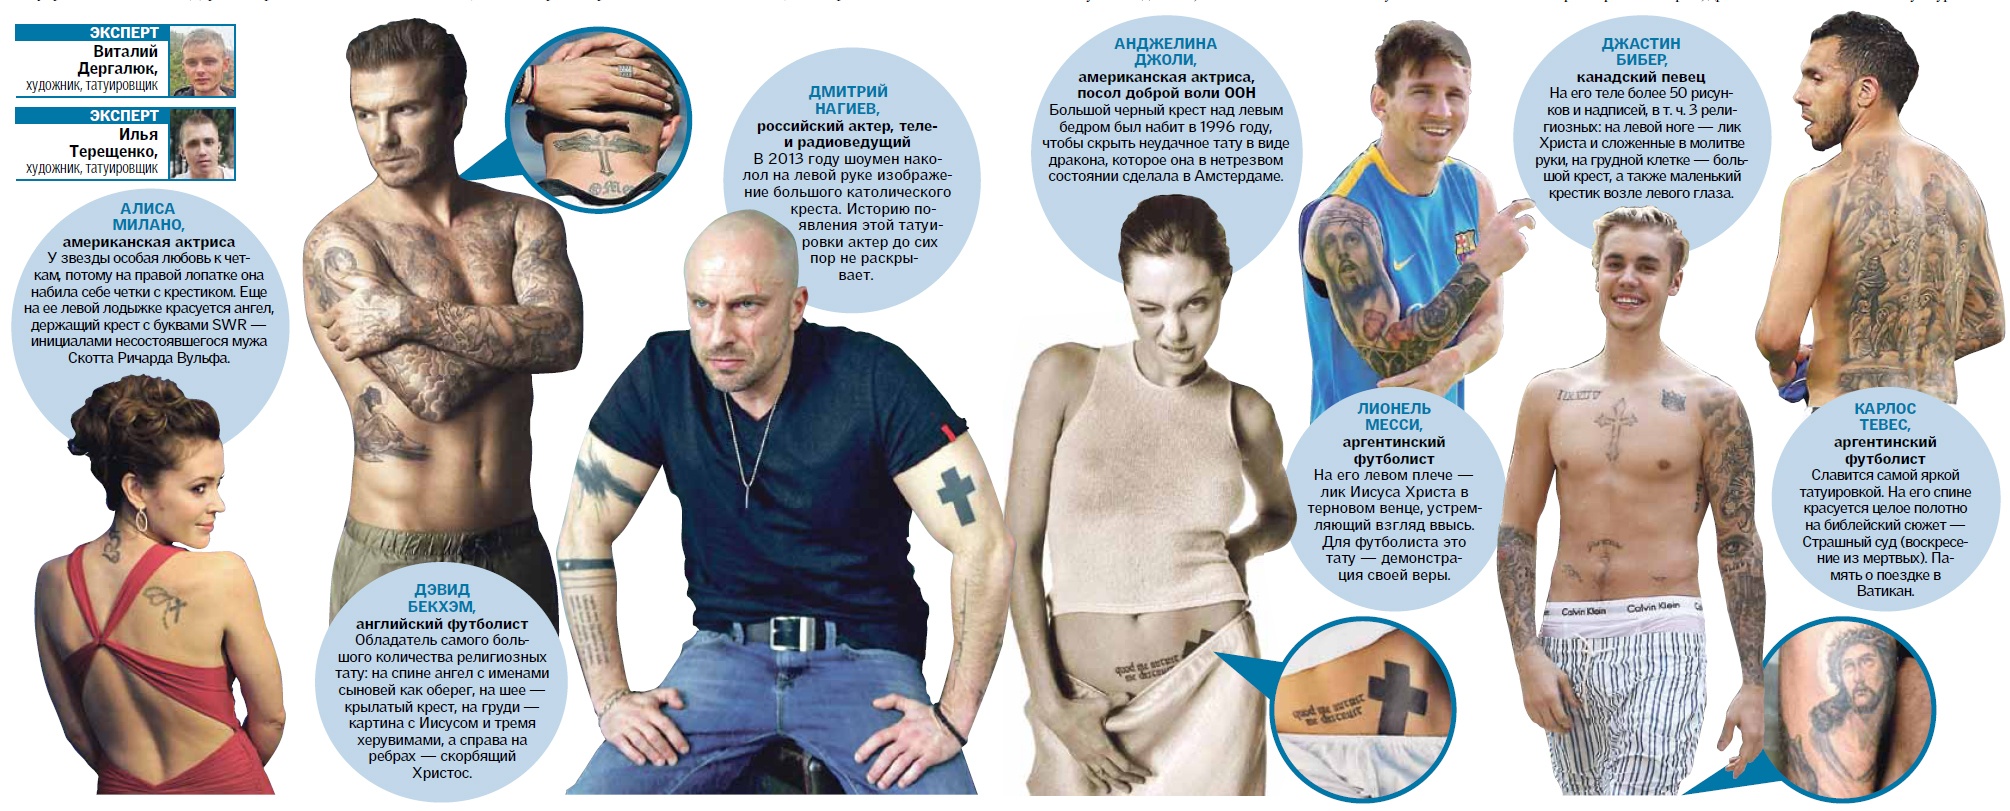 Зк тату: каталог татуировок и их значение (76 шт)